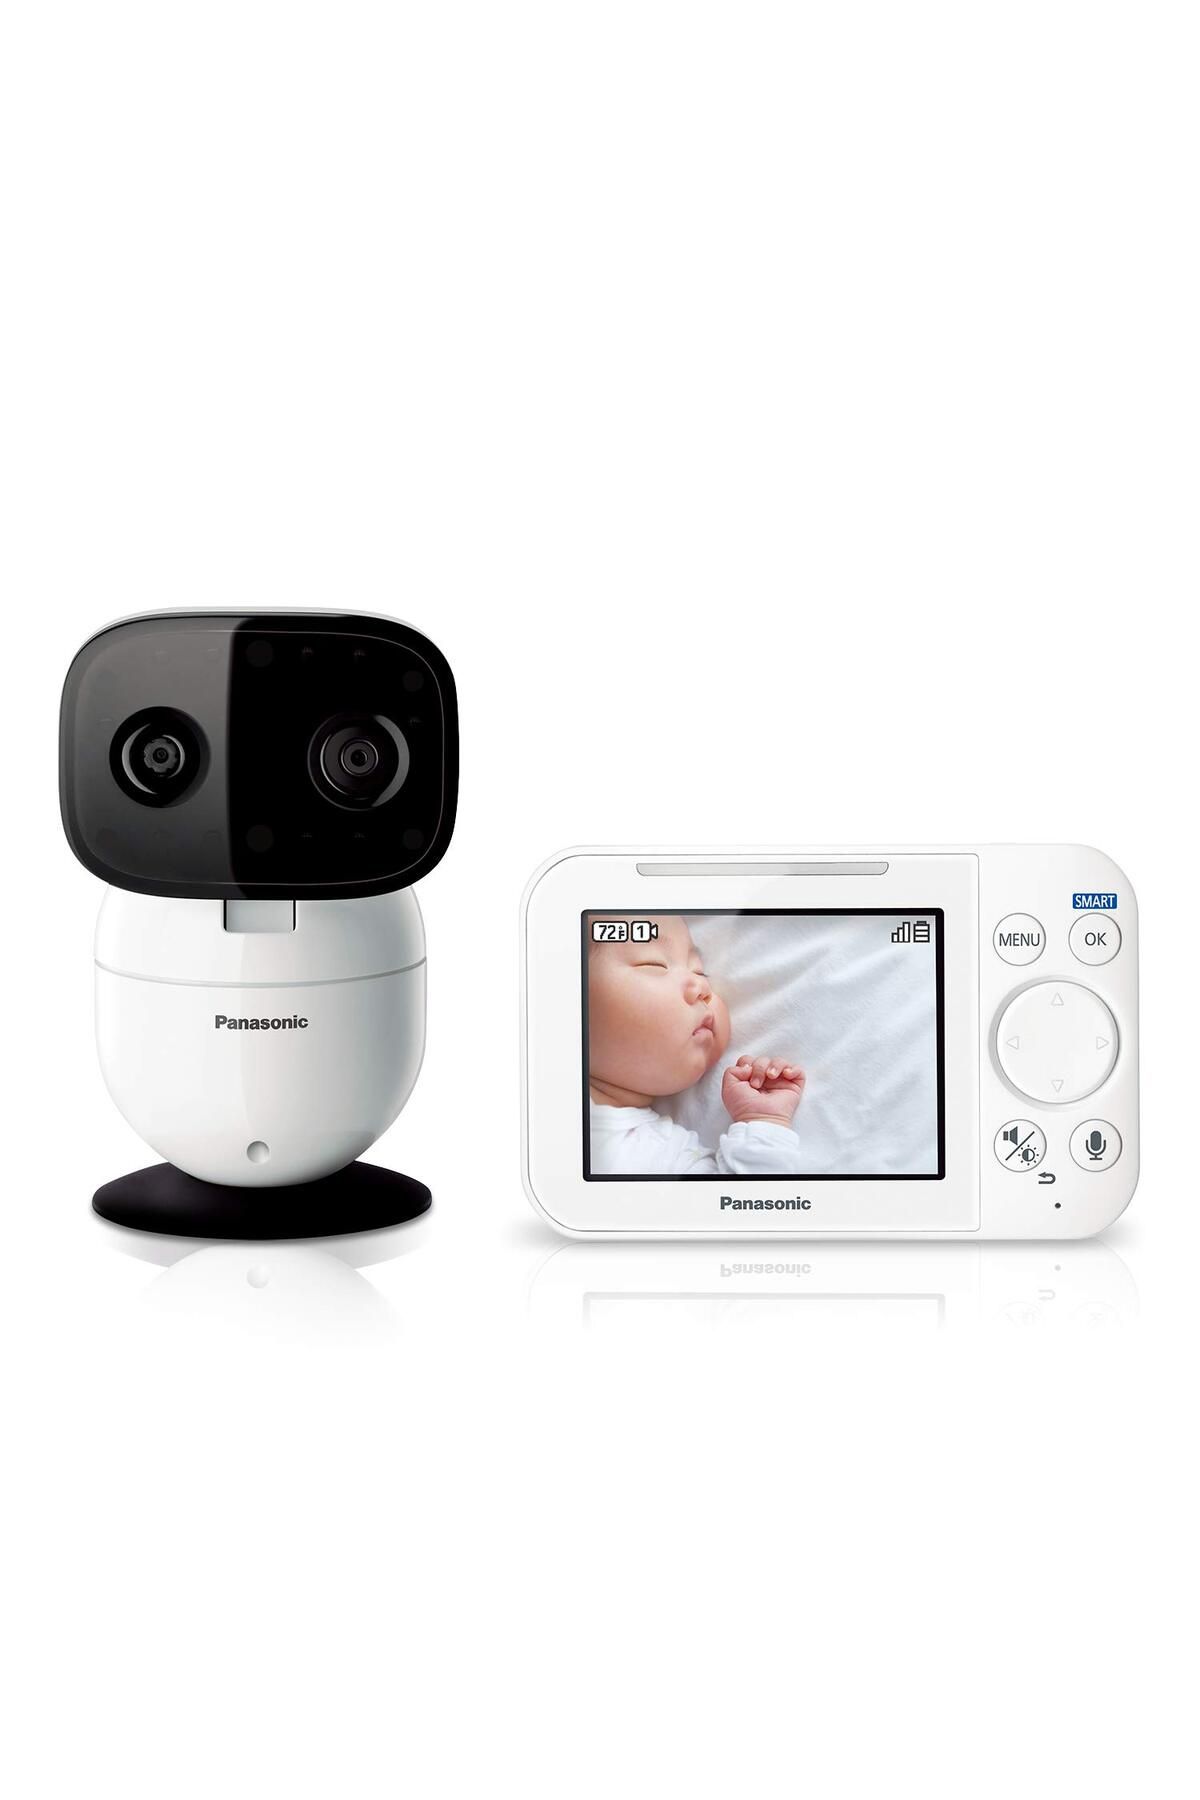 Panasonic Bebek Monitörü Kameralı ve Sesli - KX-HN4101W Beyaz